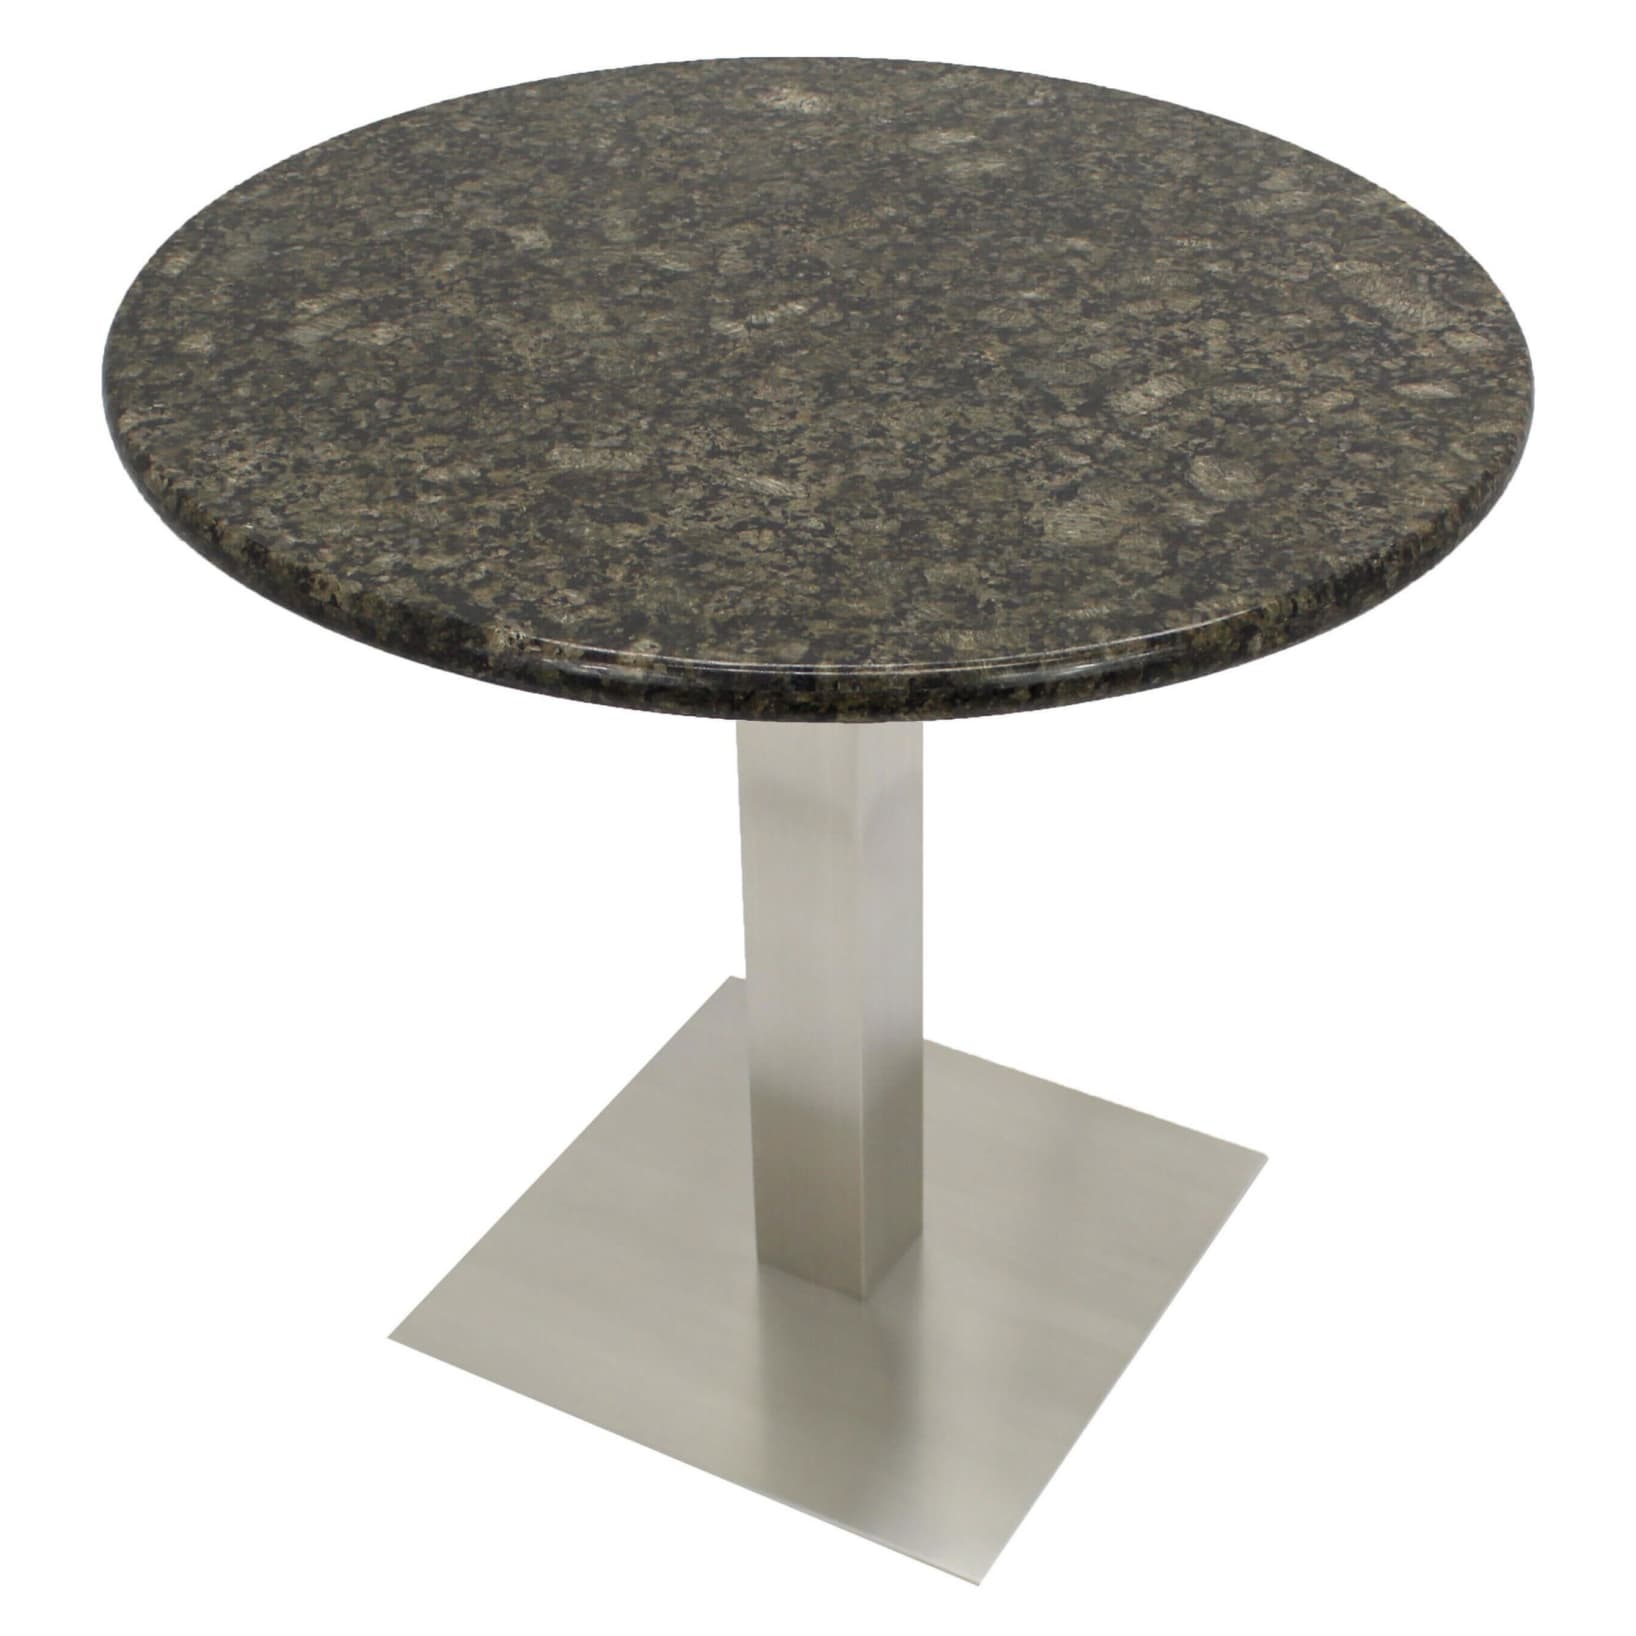 Economy Granite Table Tops, Granite Circle Table Top